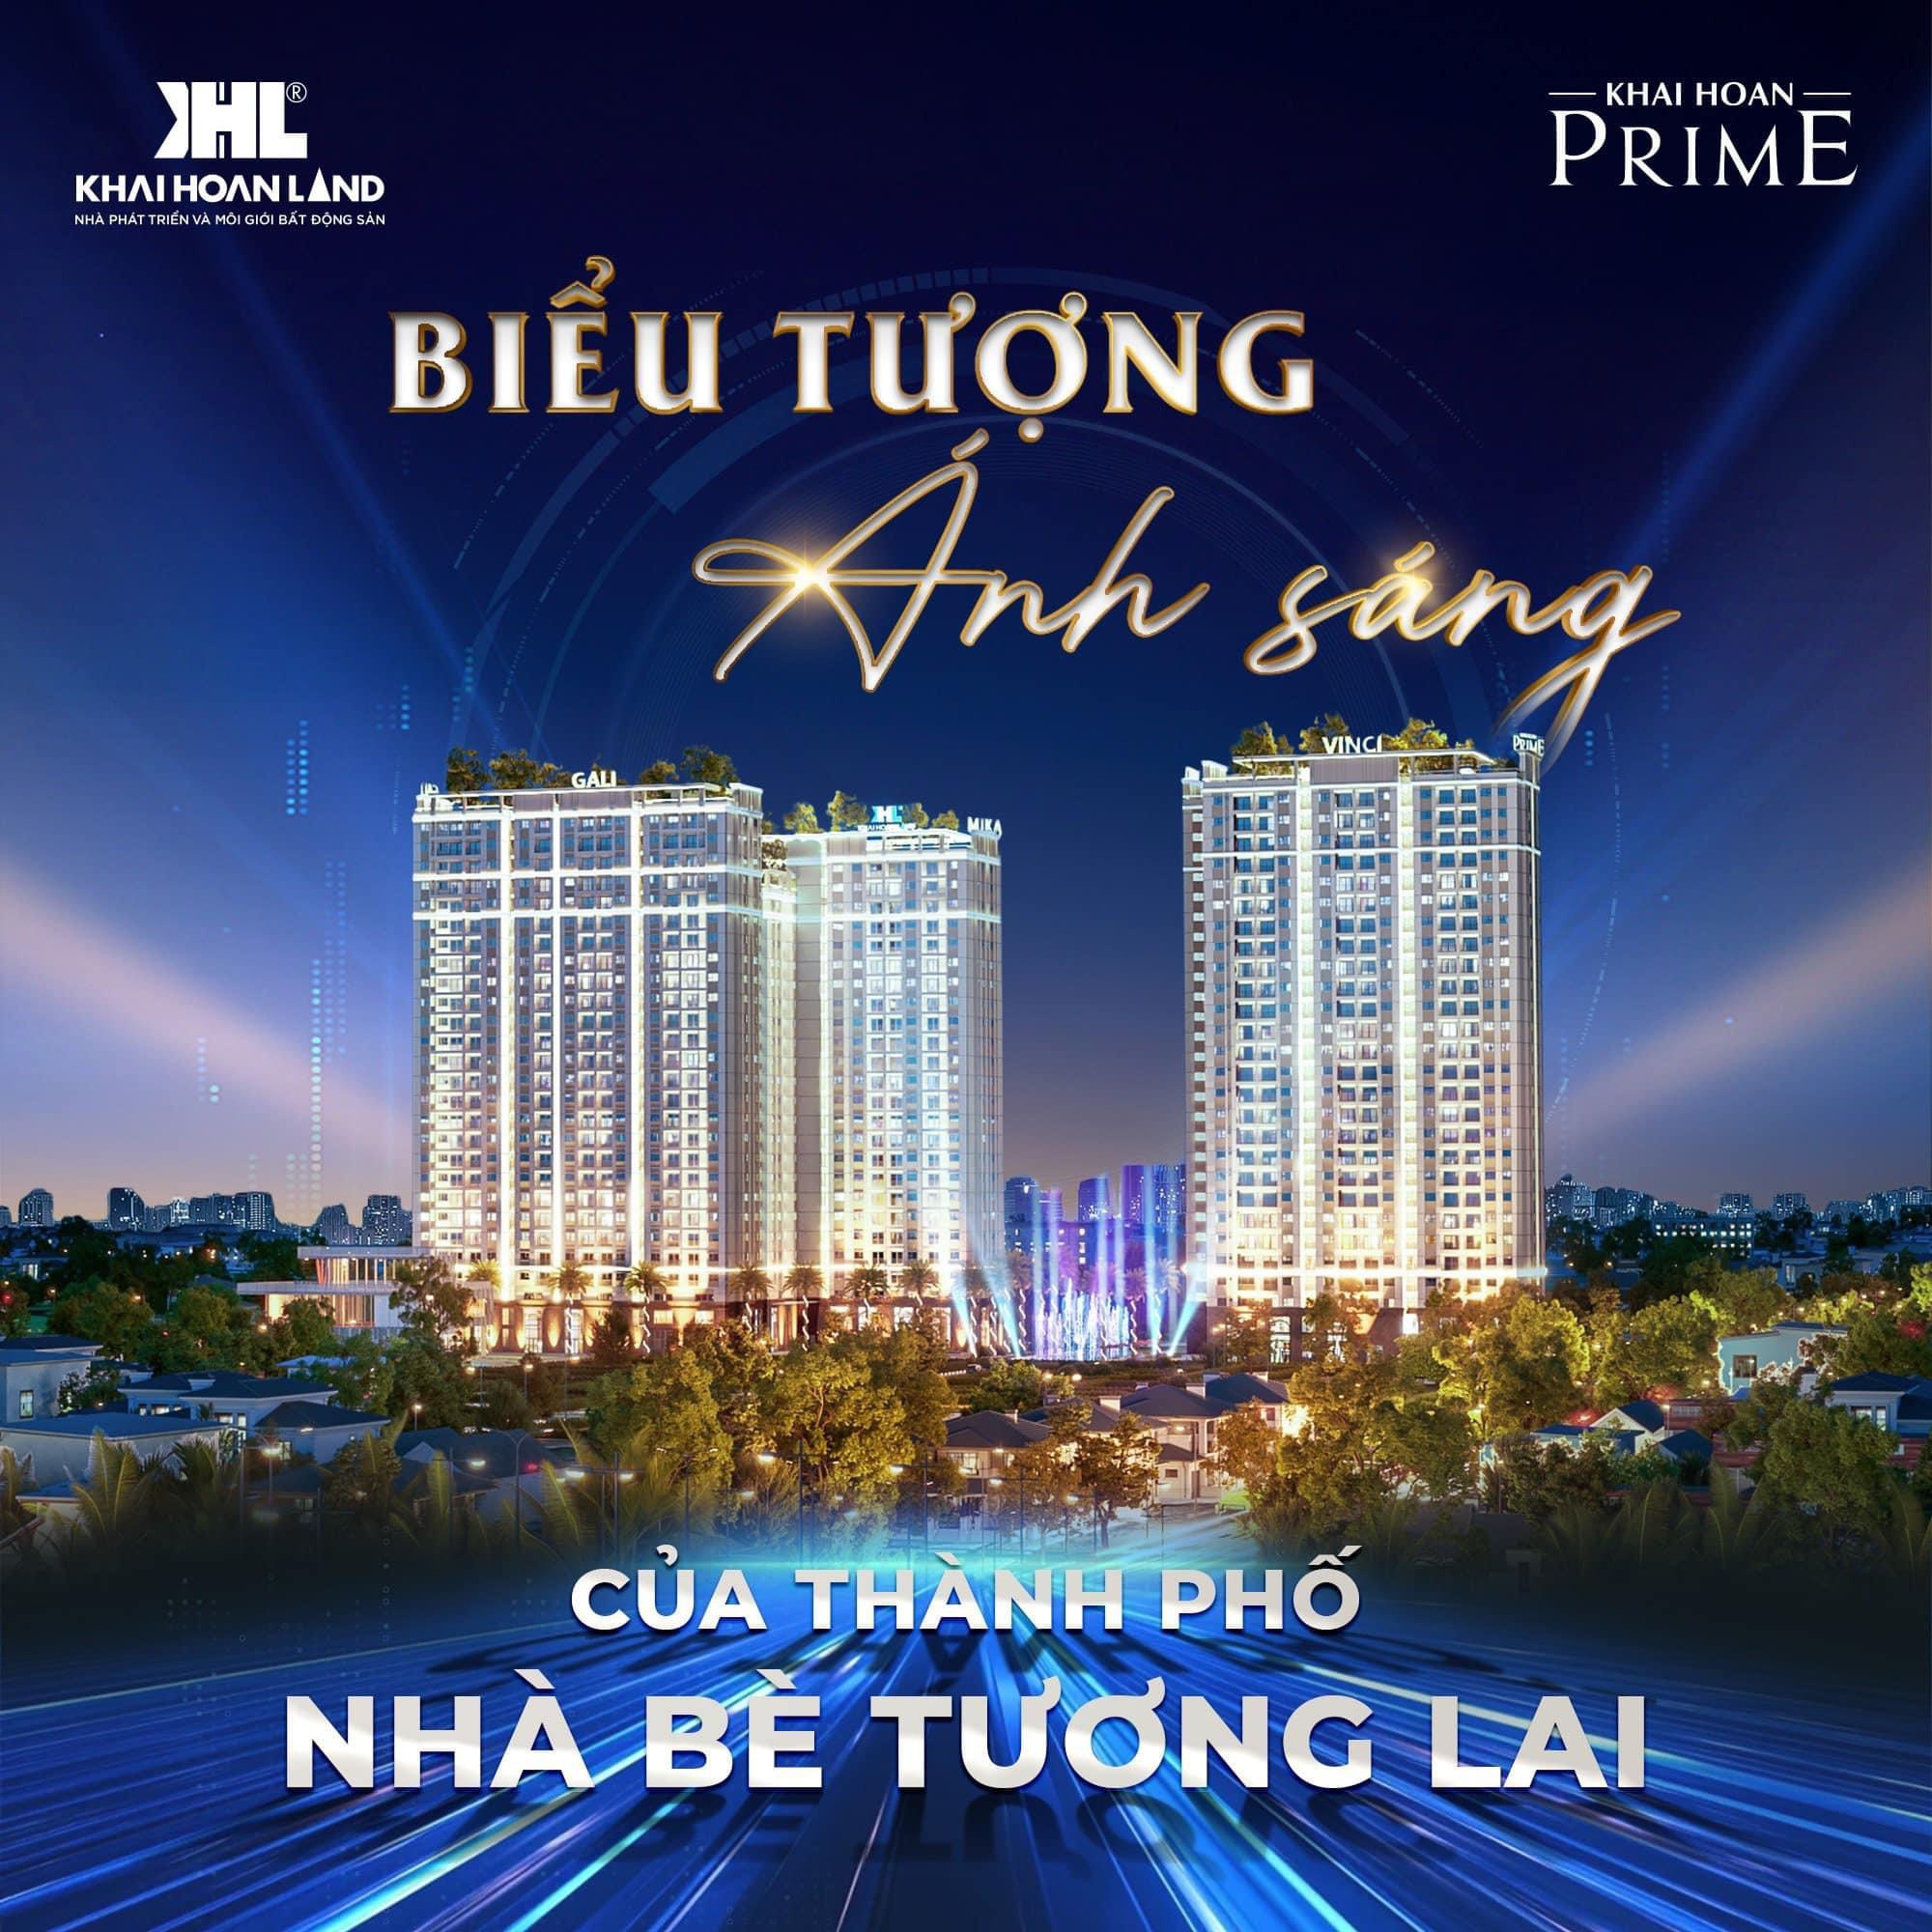 Dự án căn Hộ Khải Hoàn Prime liền kề khu đô thị Phú Mỹ Hưng Quận 7 giá 2.1 tỷ - Ảnh chính